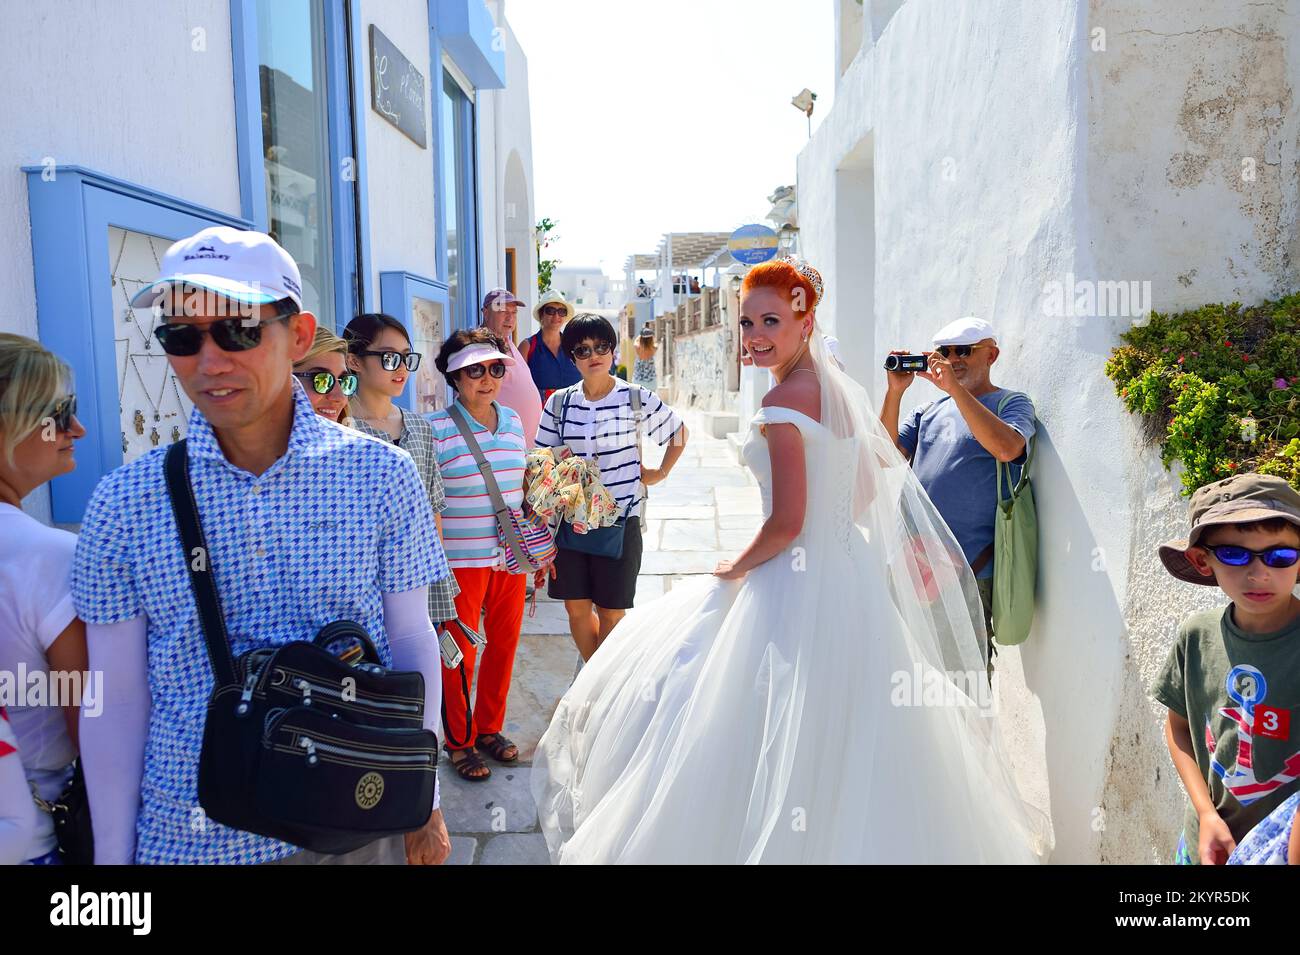 SANTORINI, GRÈCE - 05 AOÛT 2015 : femme en robe de mariée blanche marchant dans les rues de l'île de Santorini. L'île de Santorini est un endroit populaire pour les mariages Banque D'Images